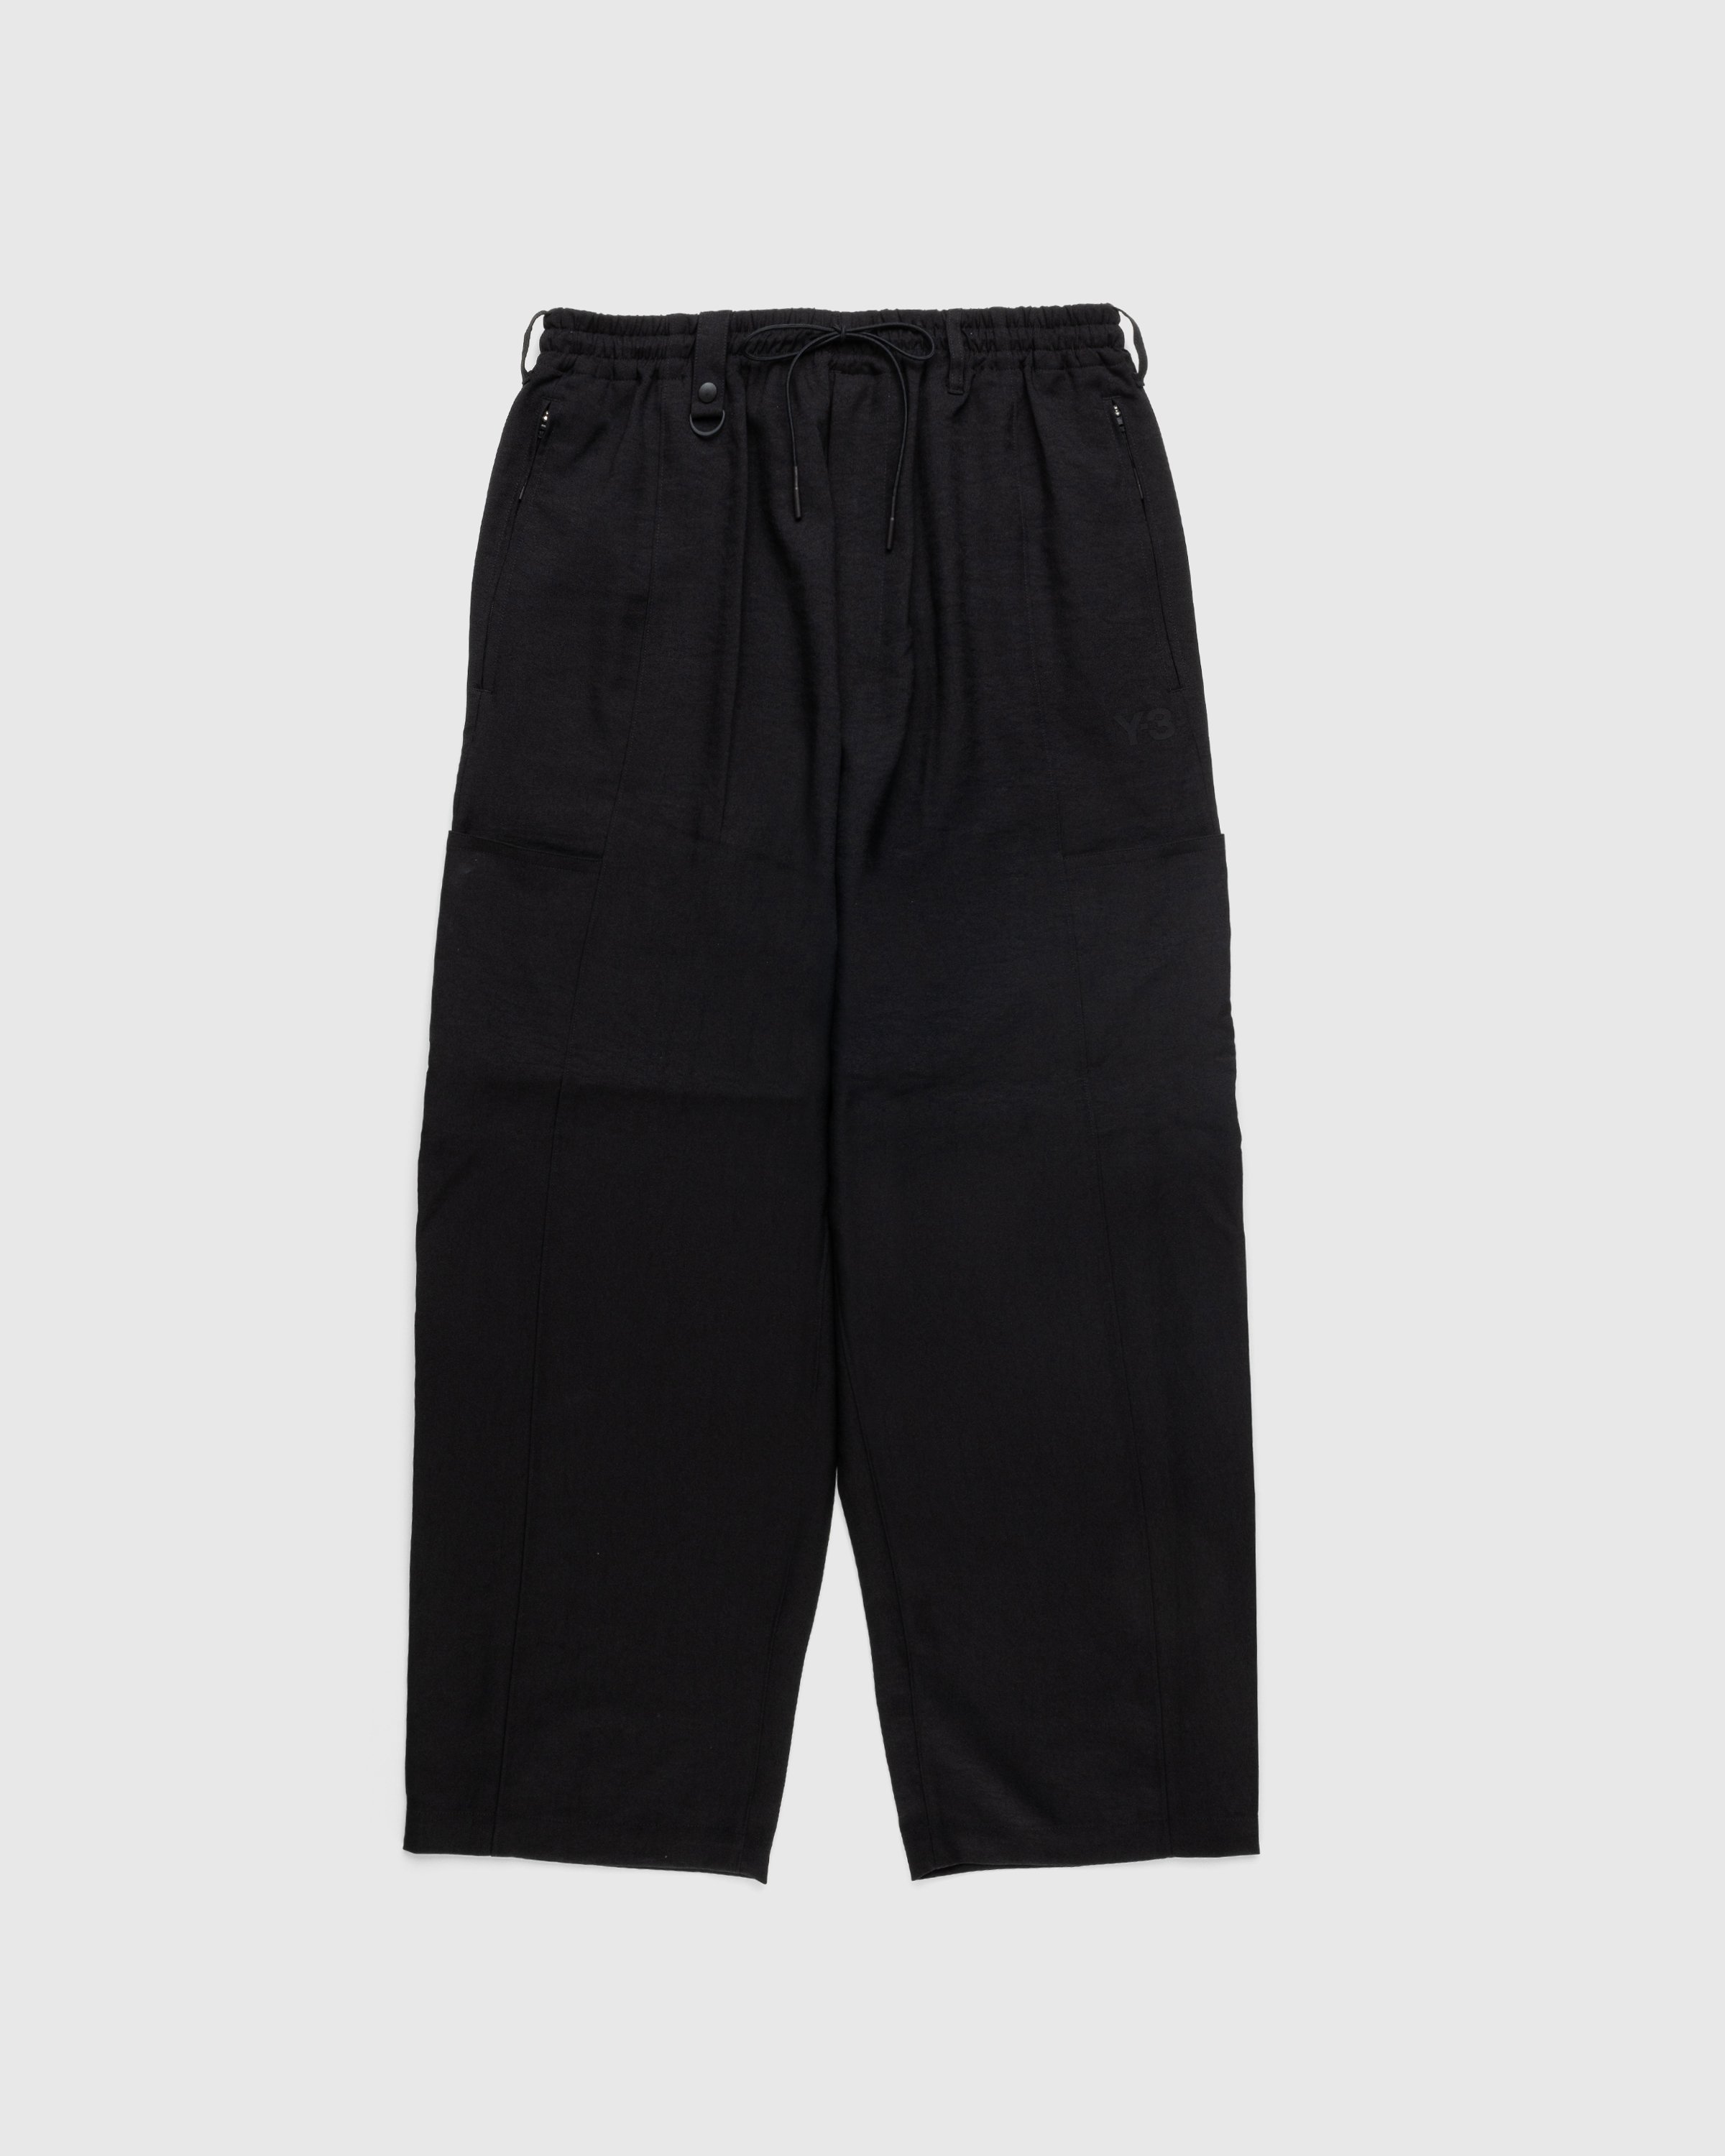 Y-3 - CL S UNI Pants - Clothing - Black - Image 1